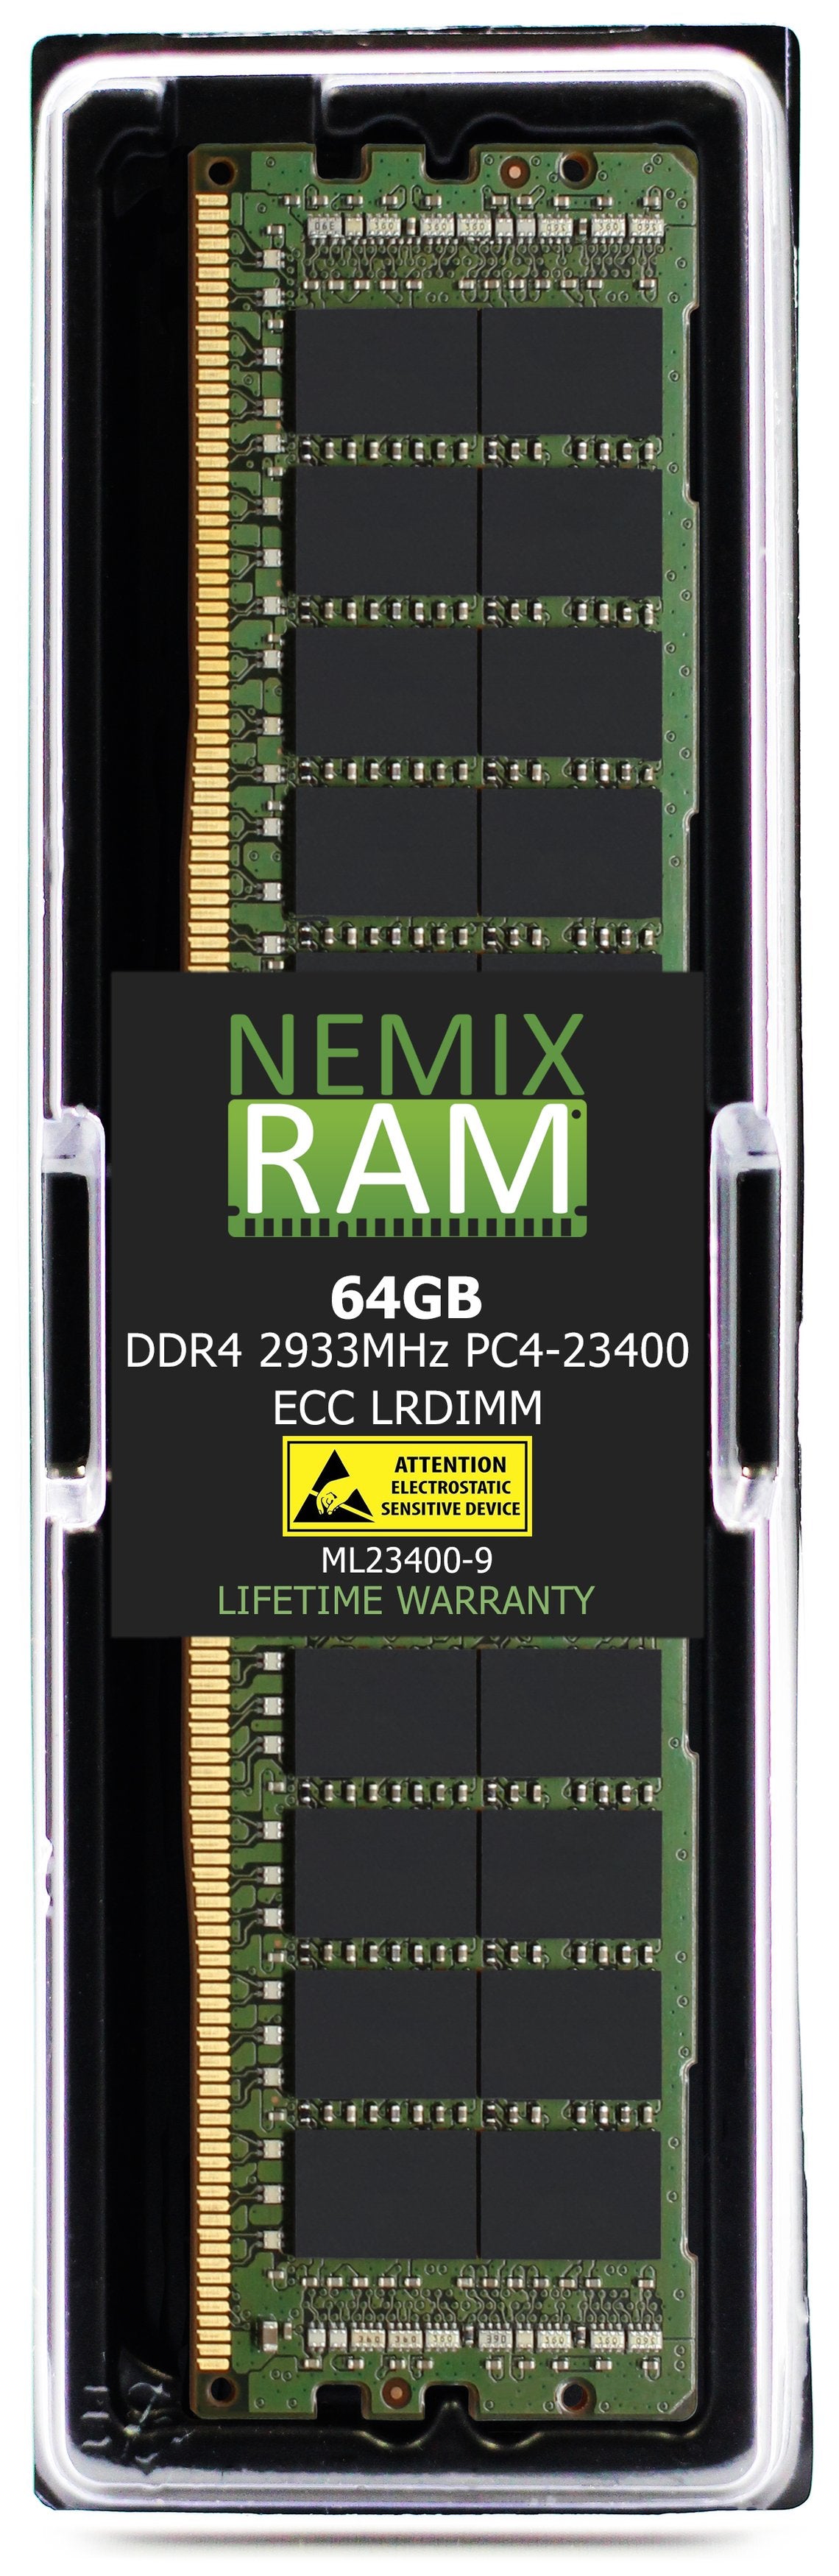 Hynix HMAA8GL7CPR4N-WM 64GB DDR4 2933MHZ PC4-23400 LRDIMM Compatible Memory Module